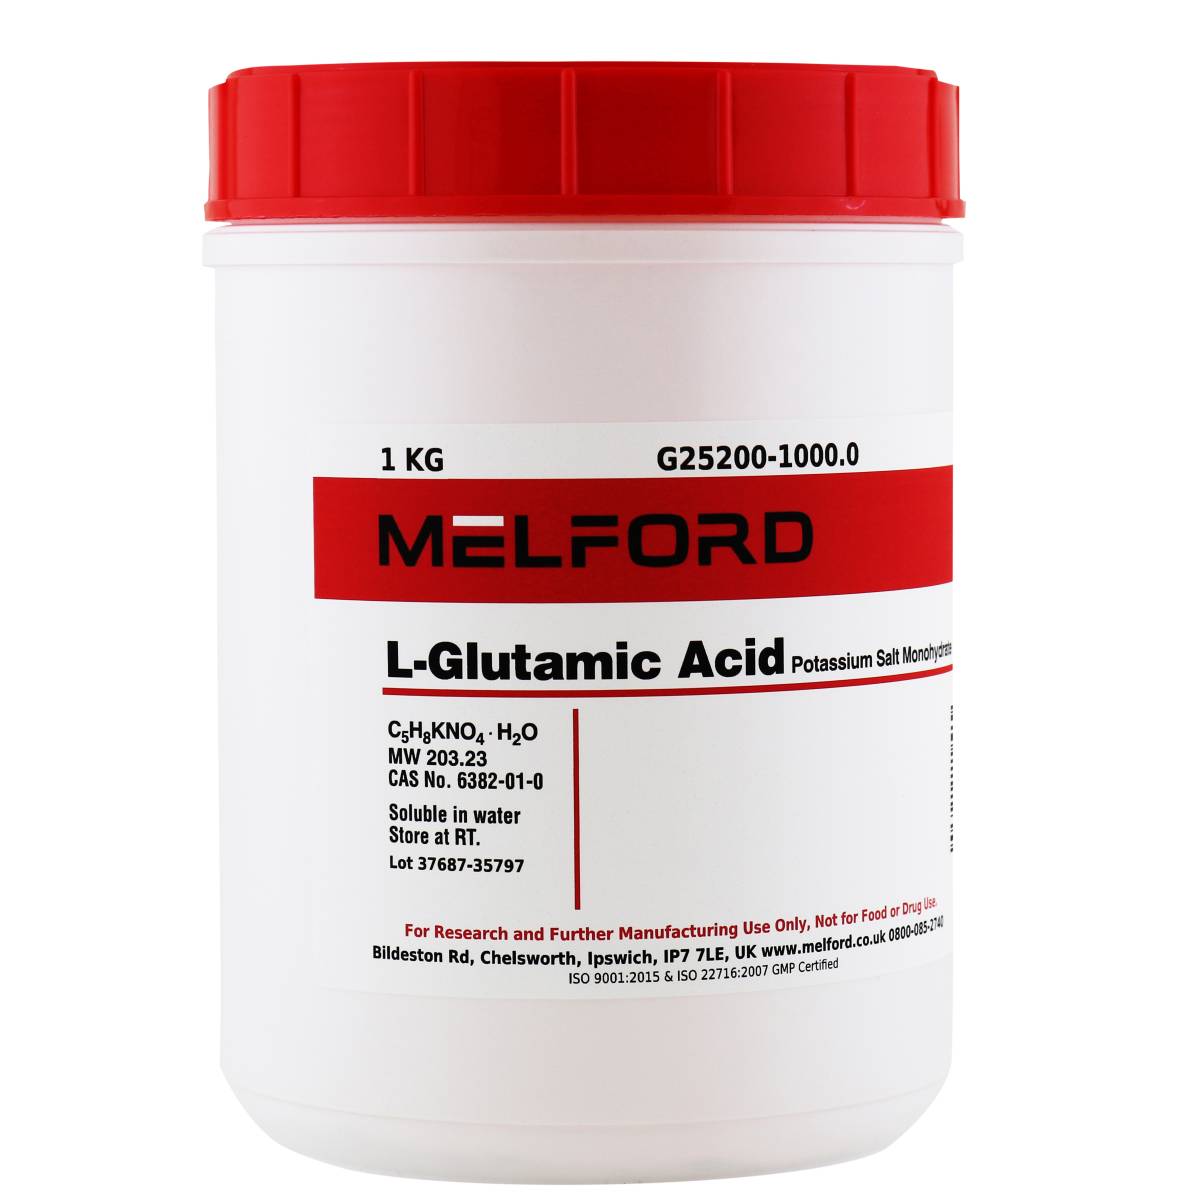 L-Glutamic Acid Potassium Salt Monohydrate, 1 Kilogram